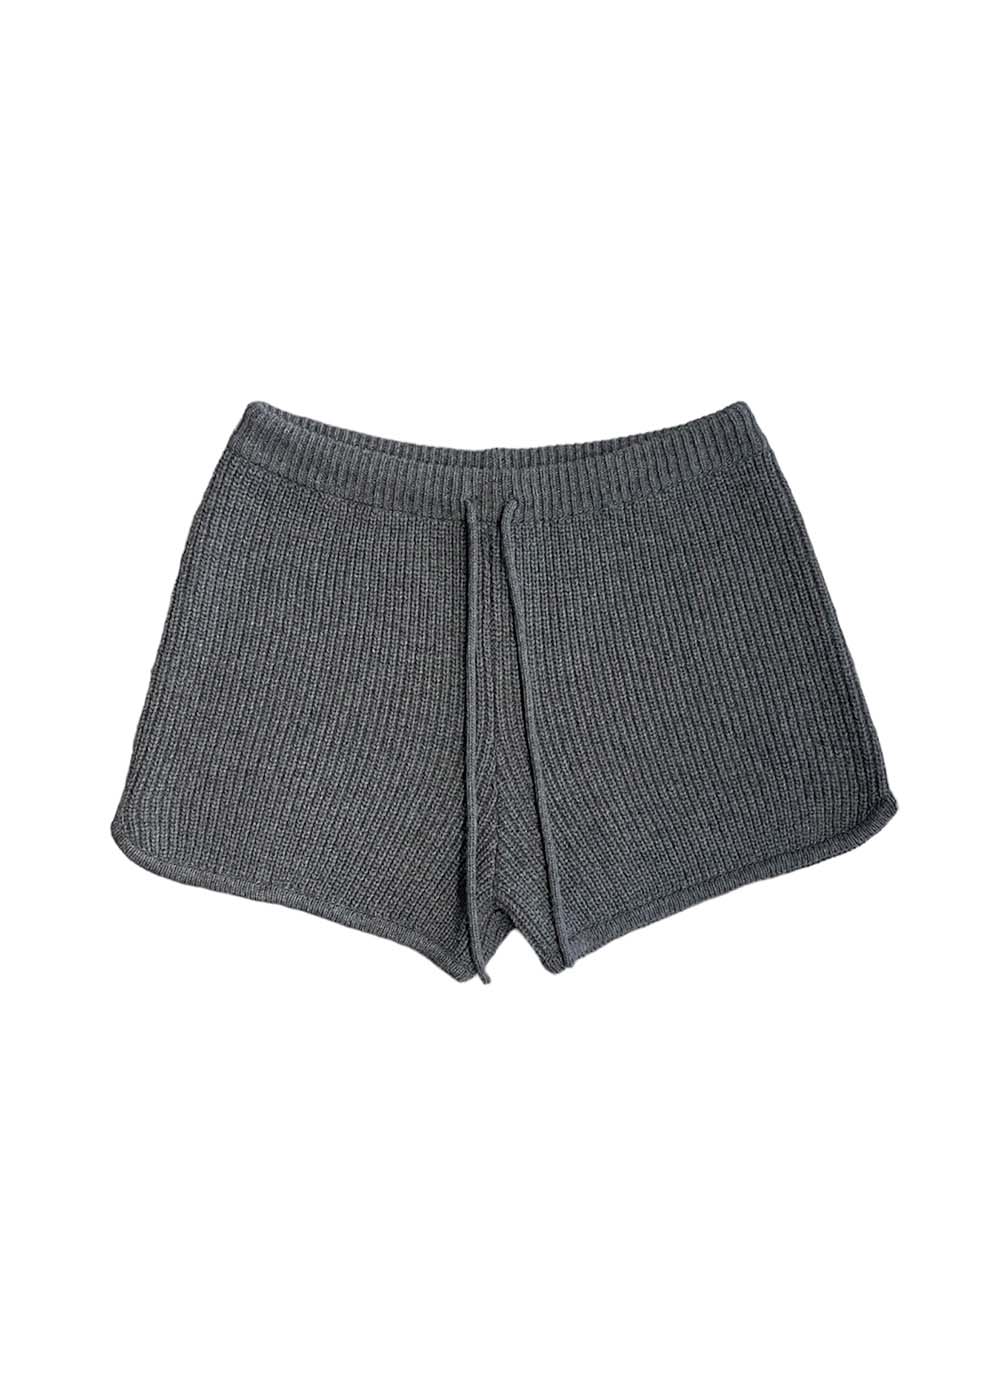 Knit Short Pants (2colors)